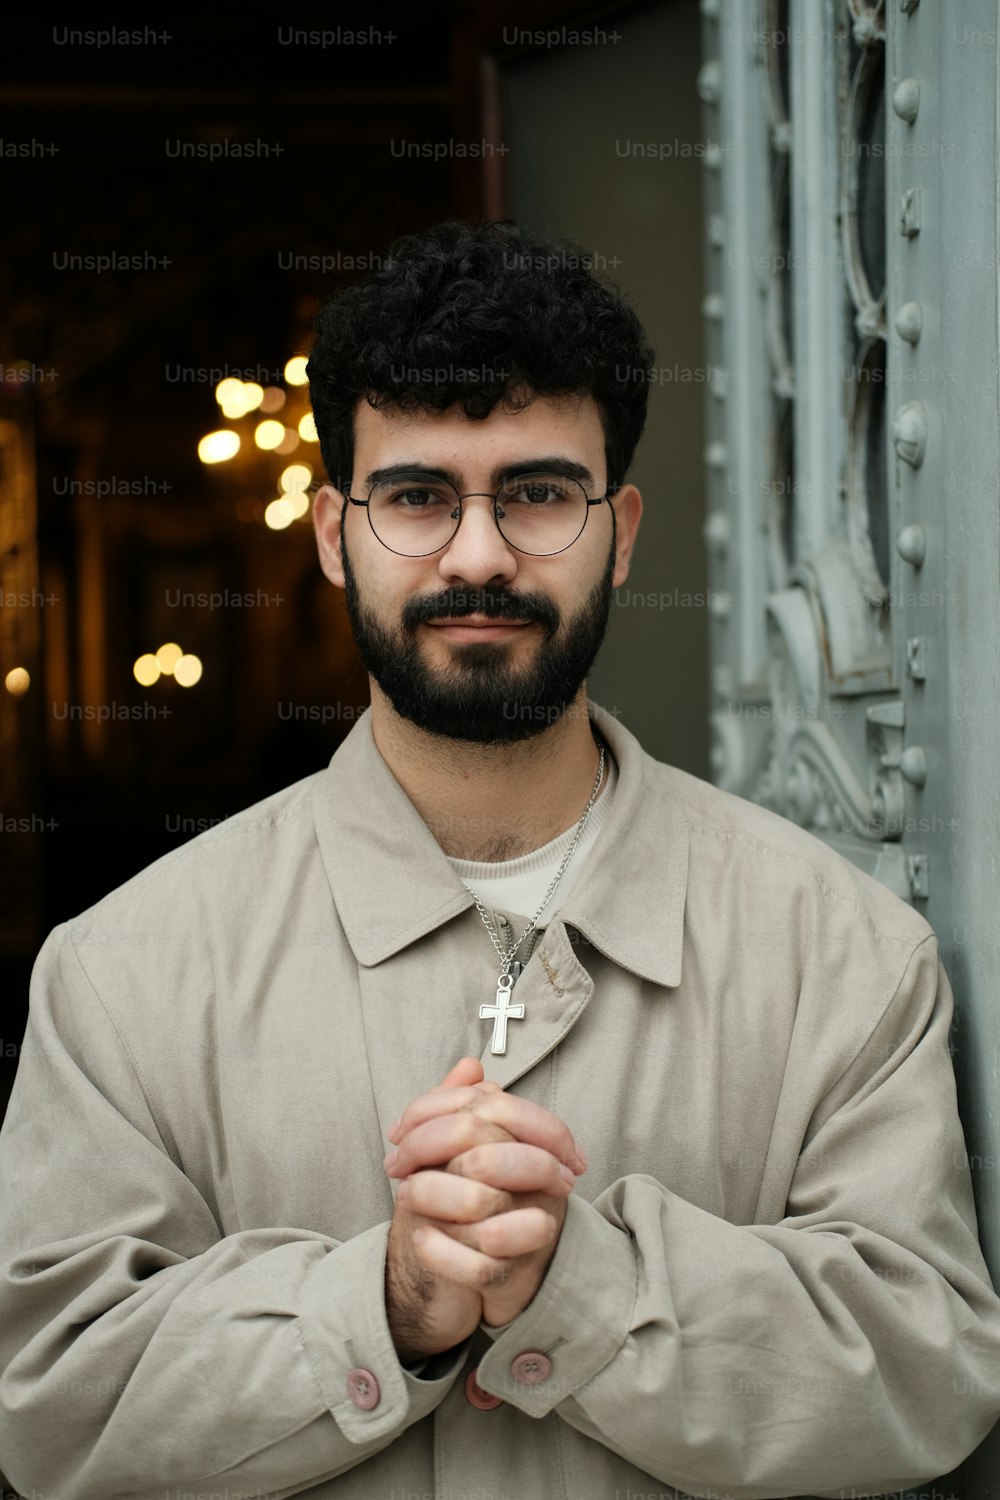 Un uomo con barba e occhiali che reggono una croce